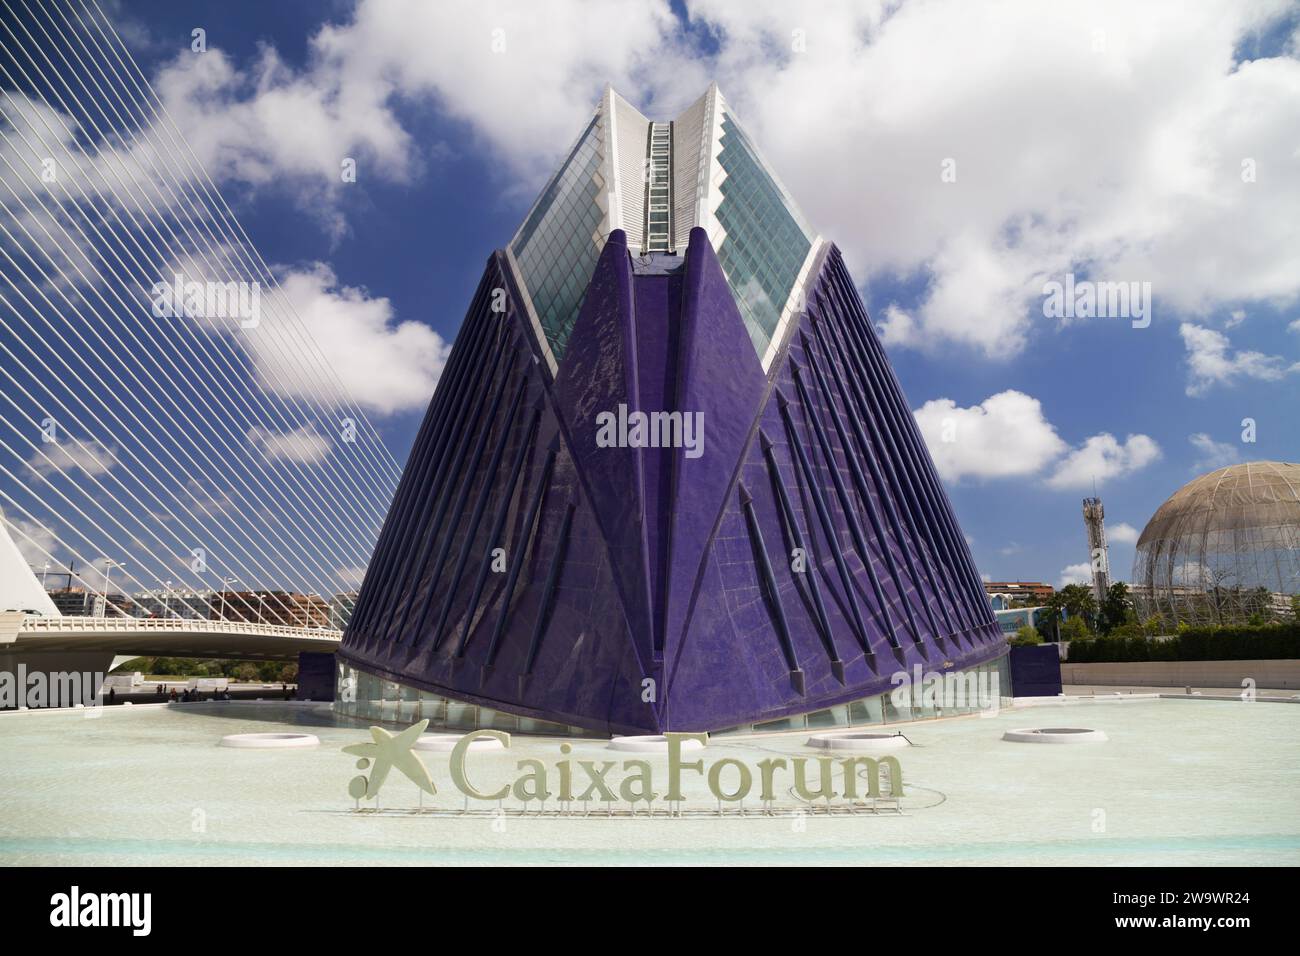 Valence, Espagne - 14 août 2023 : CaixaForum dans la Cité des Arts et des Sciences de Valence. Espagne. Banque D'Images